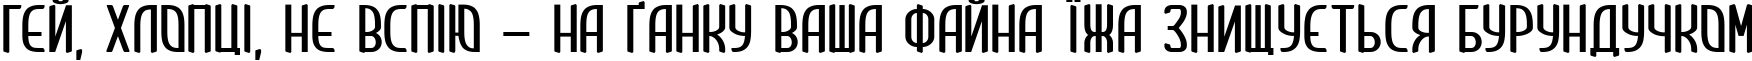 Пример написания шрифтом Clip  Condensed текста на украинском